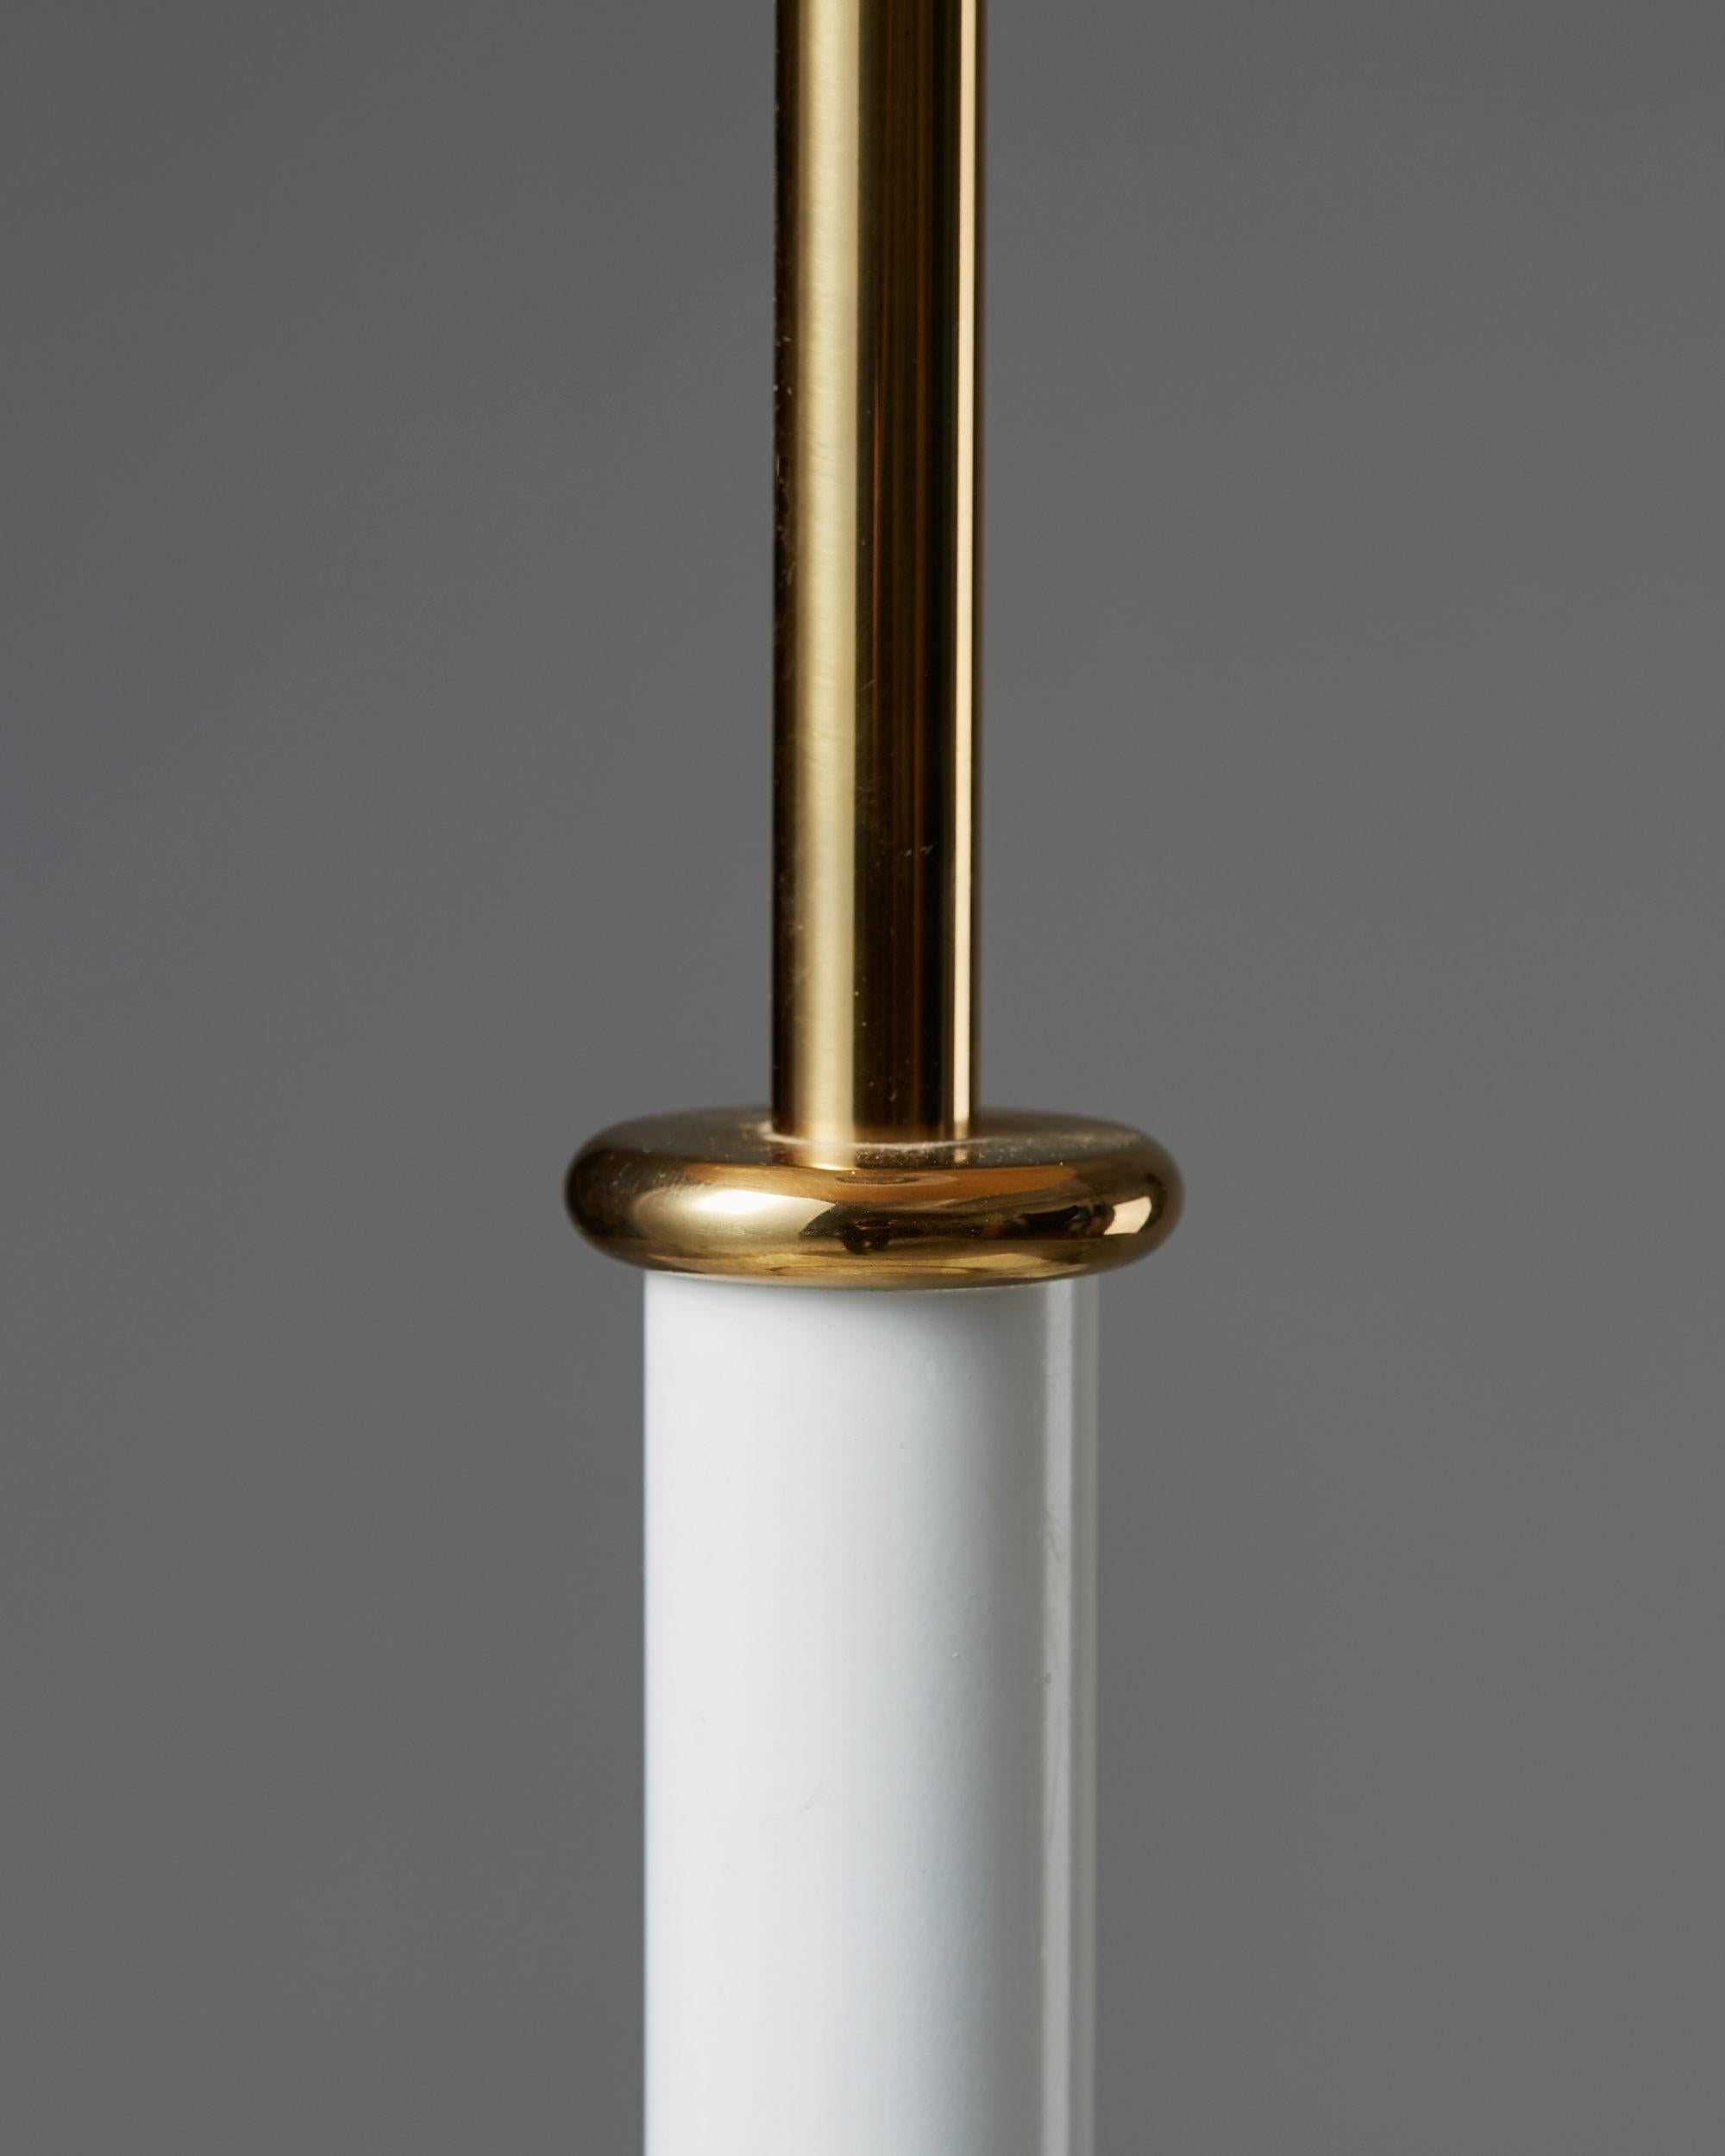 Swedish Table Lamp Model Number 2466 Designed by Josef Frank for Svenskt Tenn, Sweden. 1